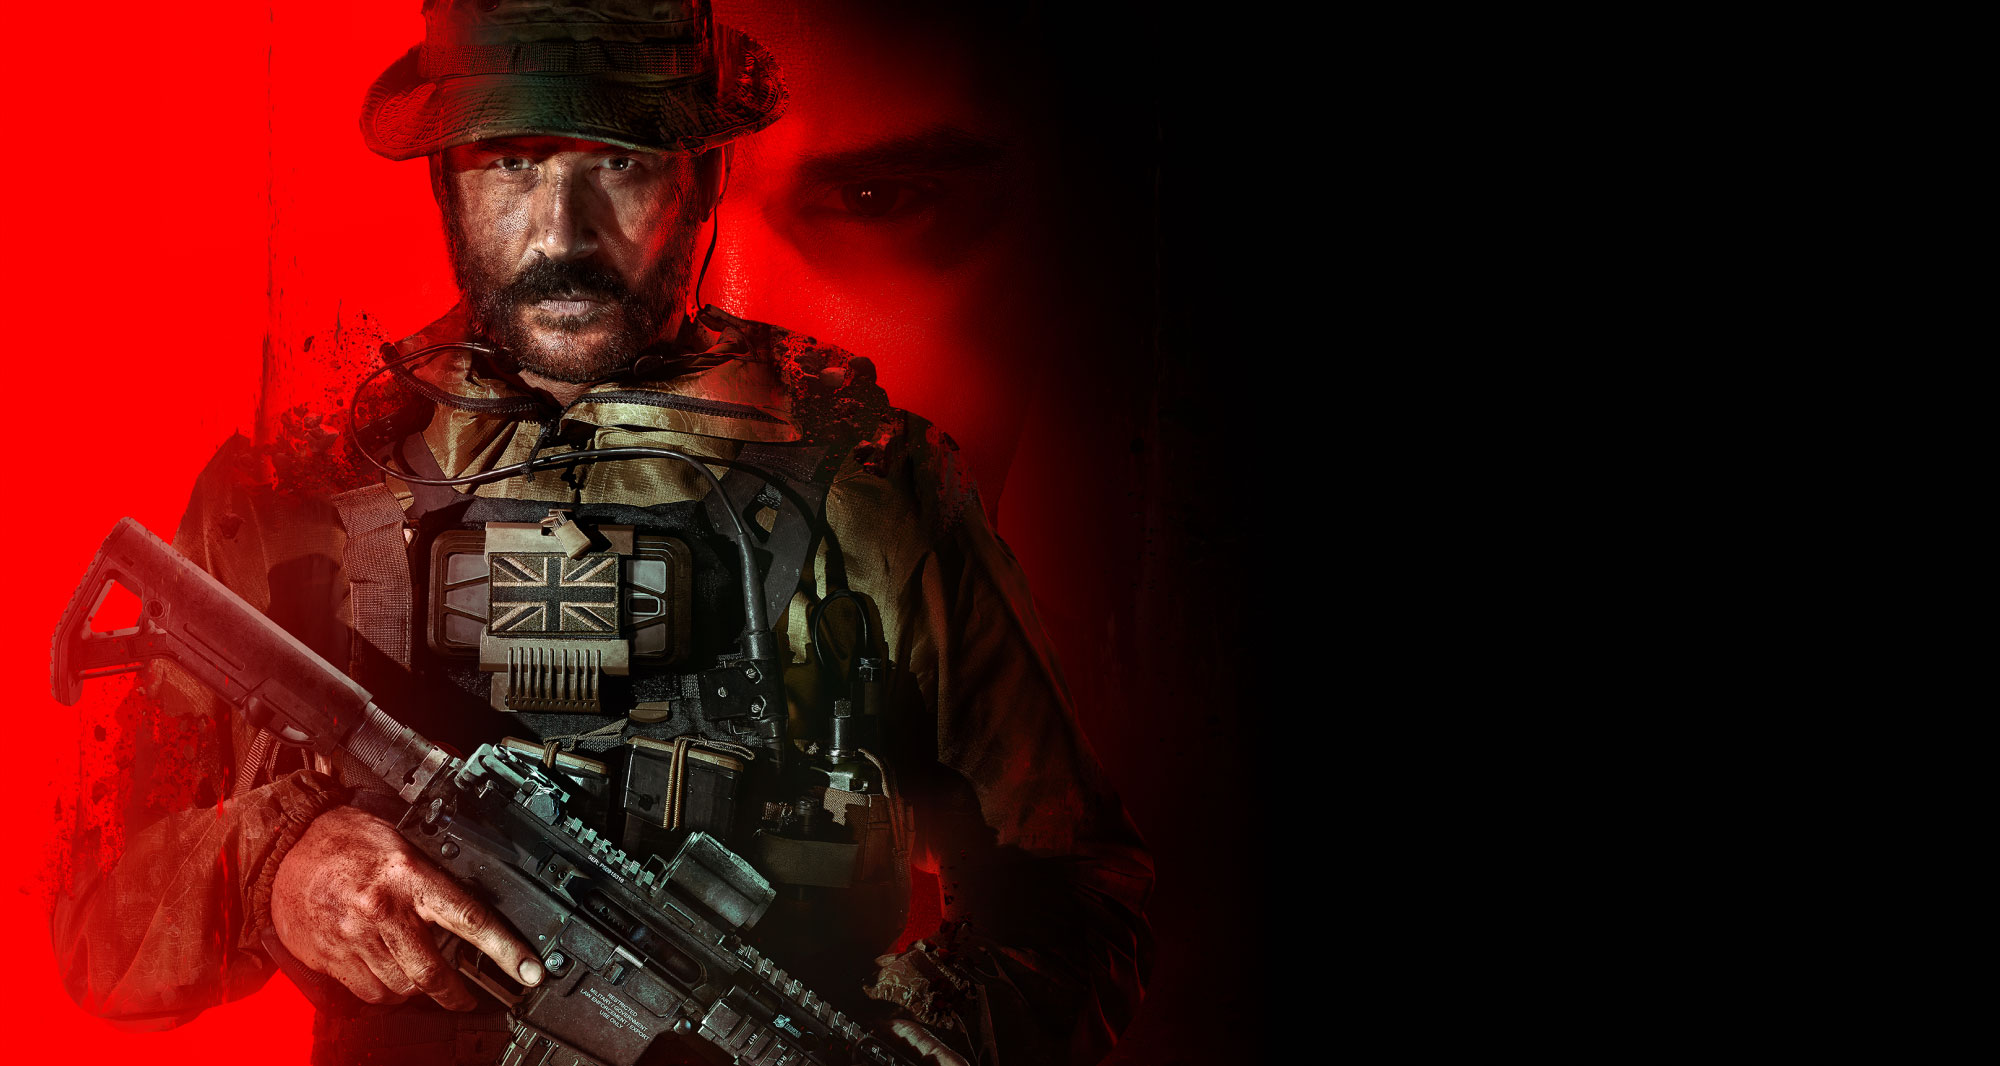 Получите награды Modern Warfare 3 перед ее запуском, сыграв завтра в ограниченном по времени событии.